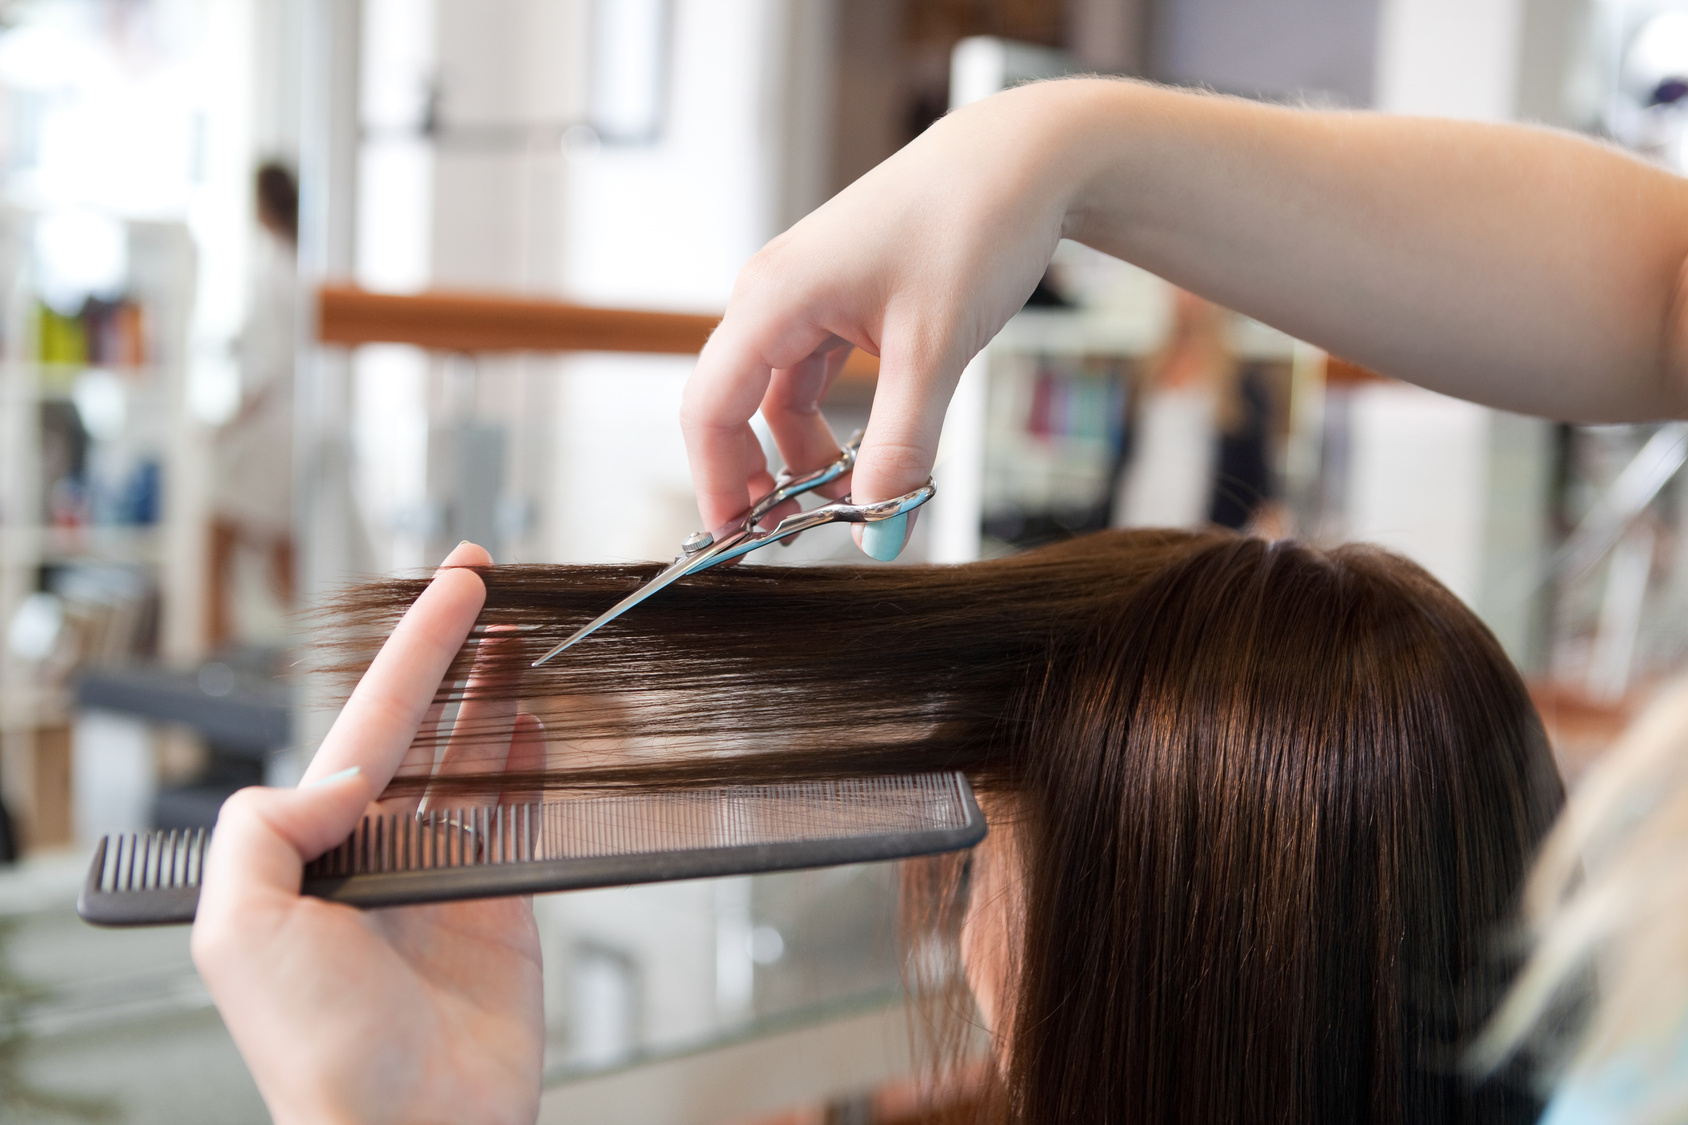 Własny salon fryzjerski – jak zacząć?